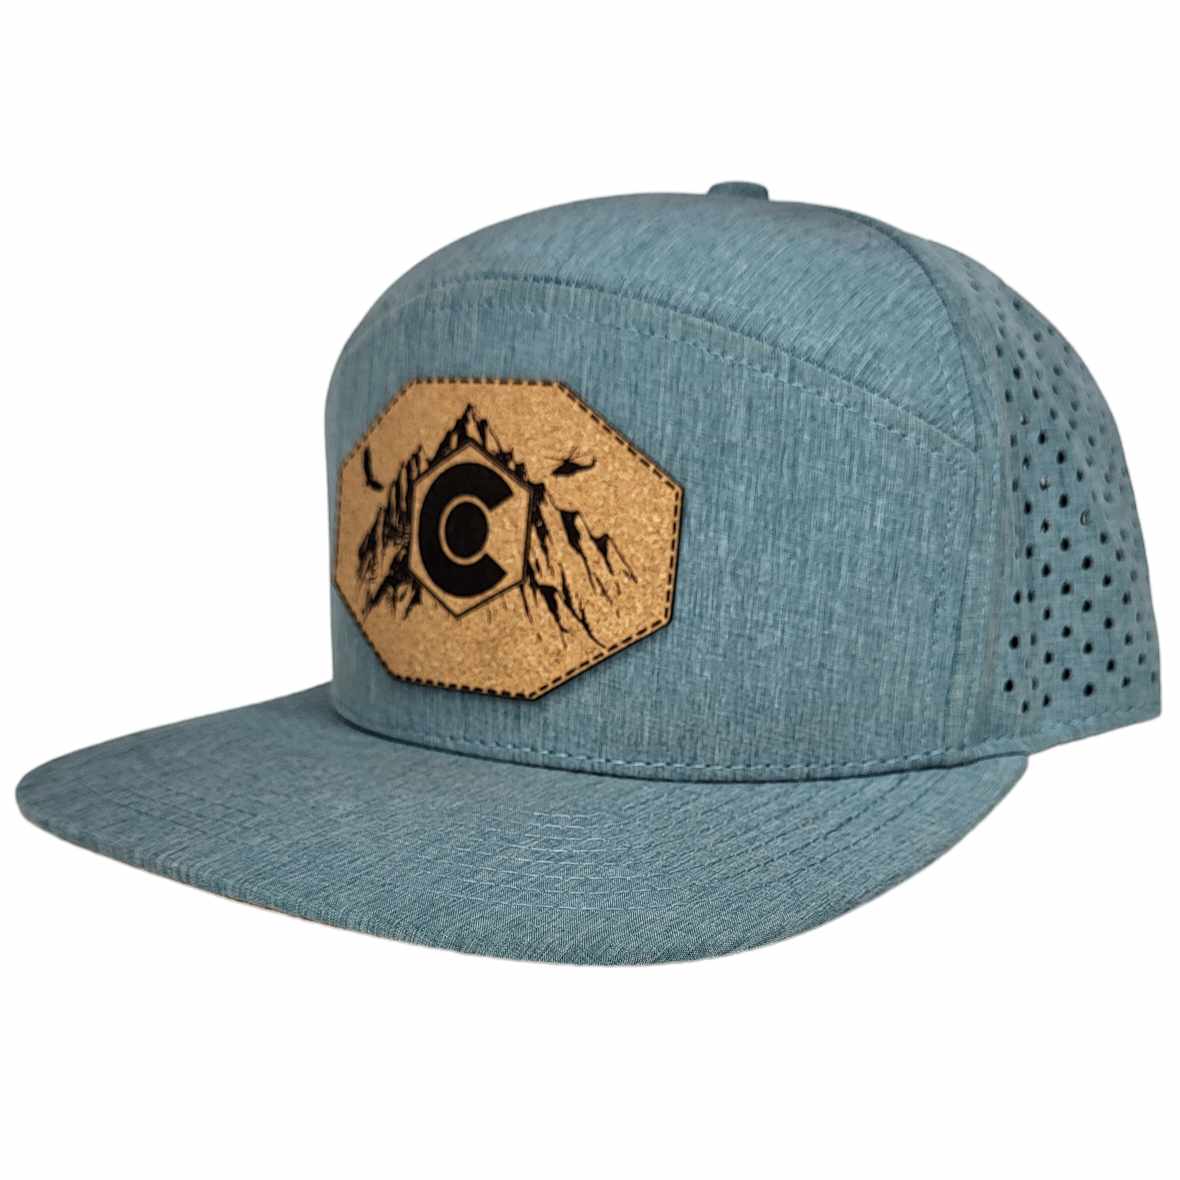 Colorado Rockies Hat